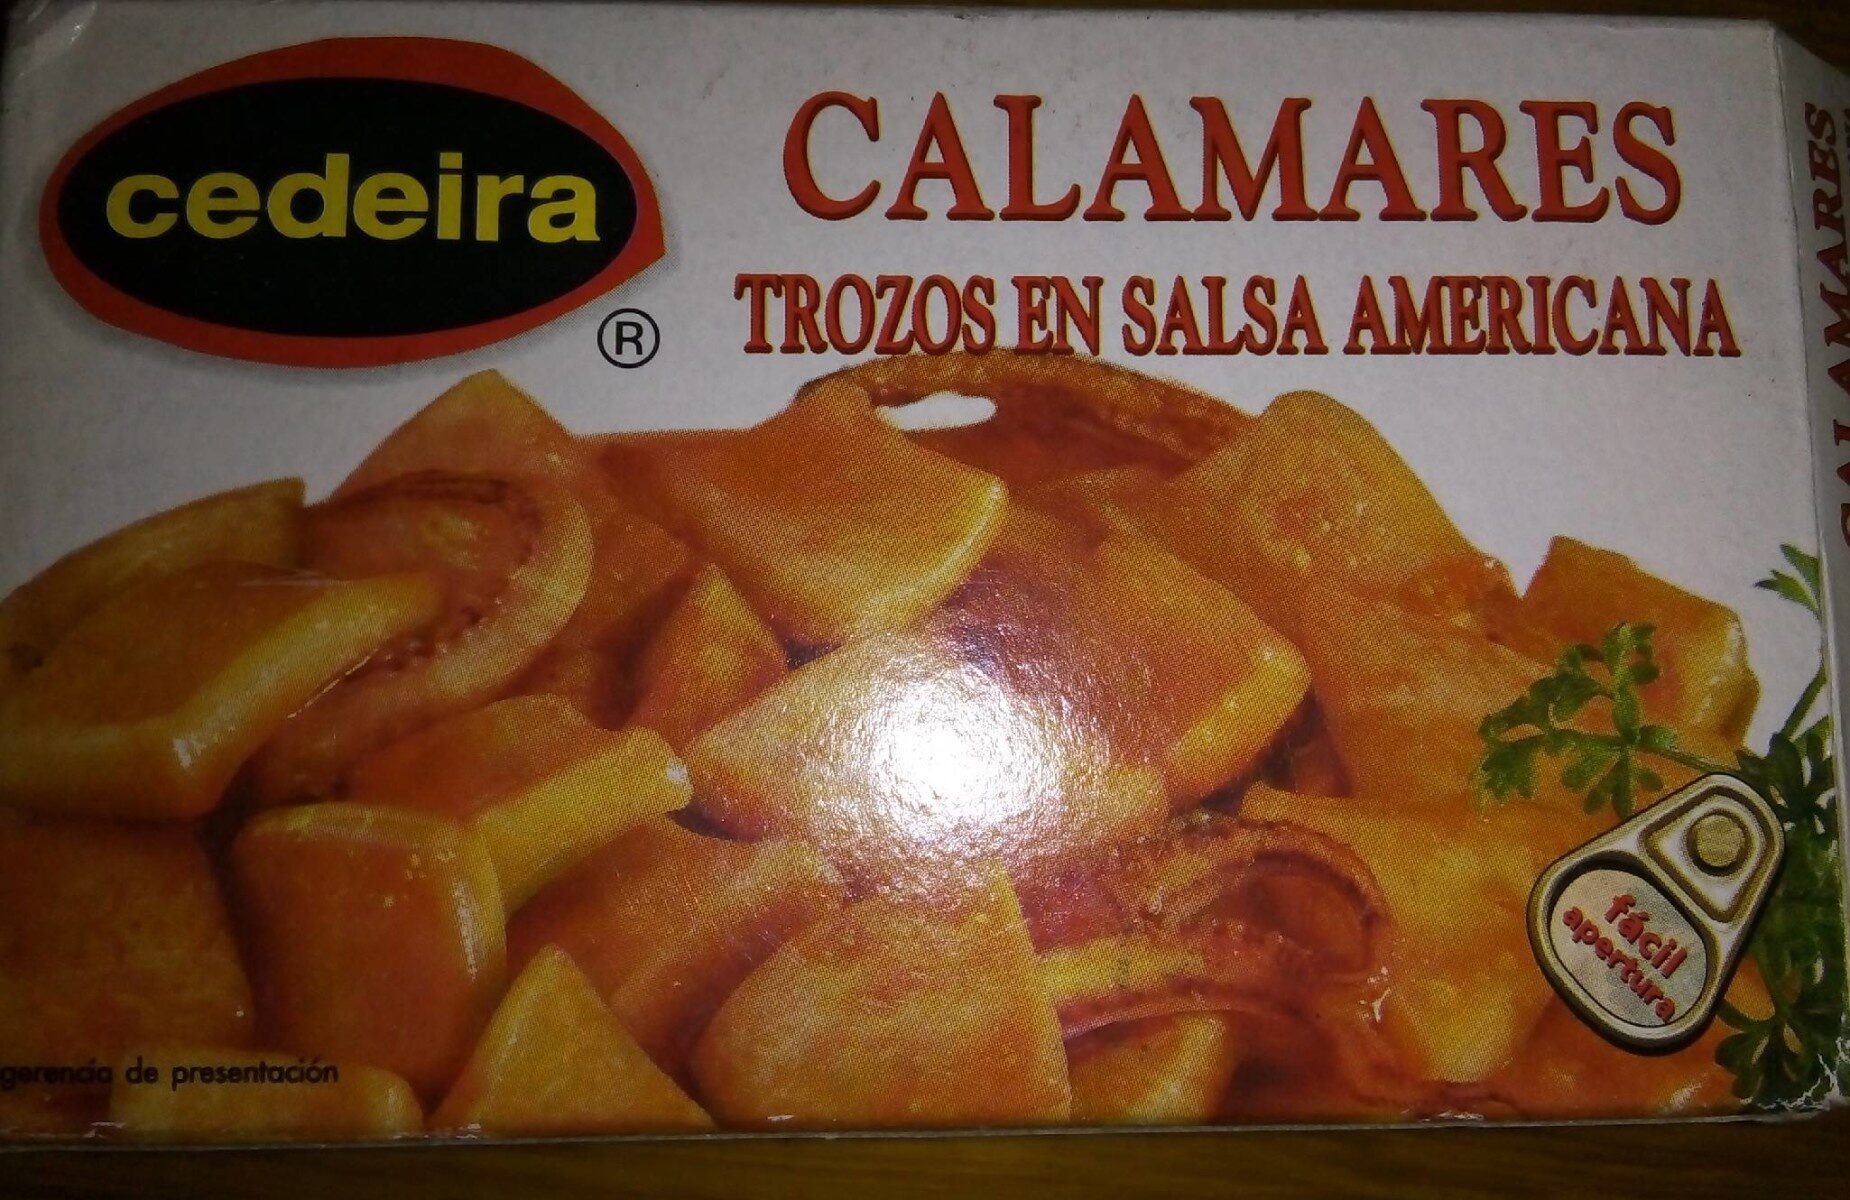 Calamares trozos en salsa americana - Producte - es